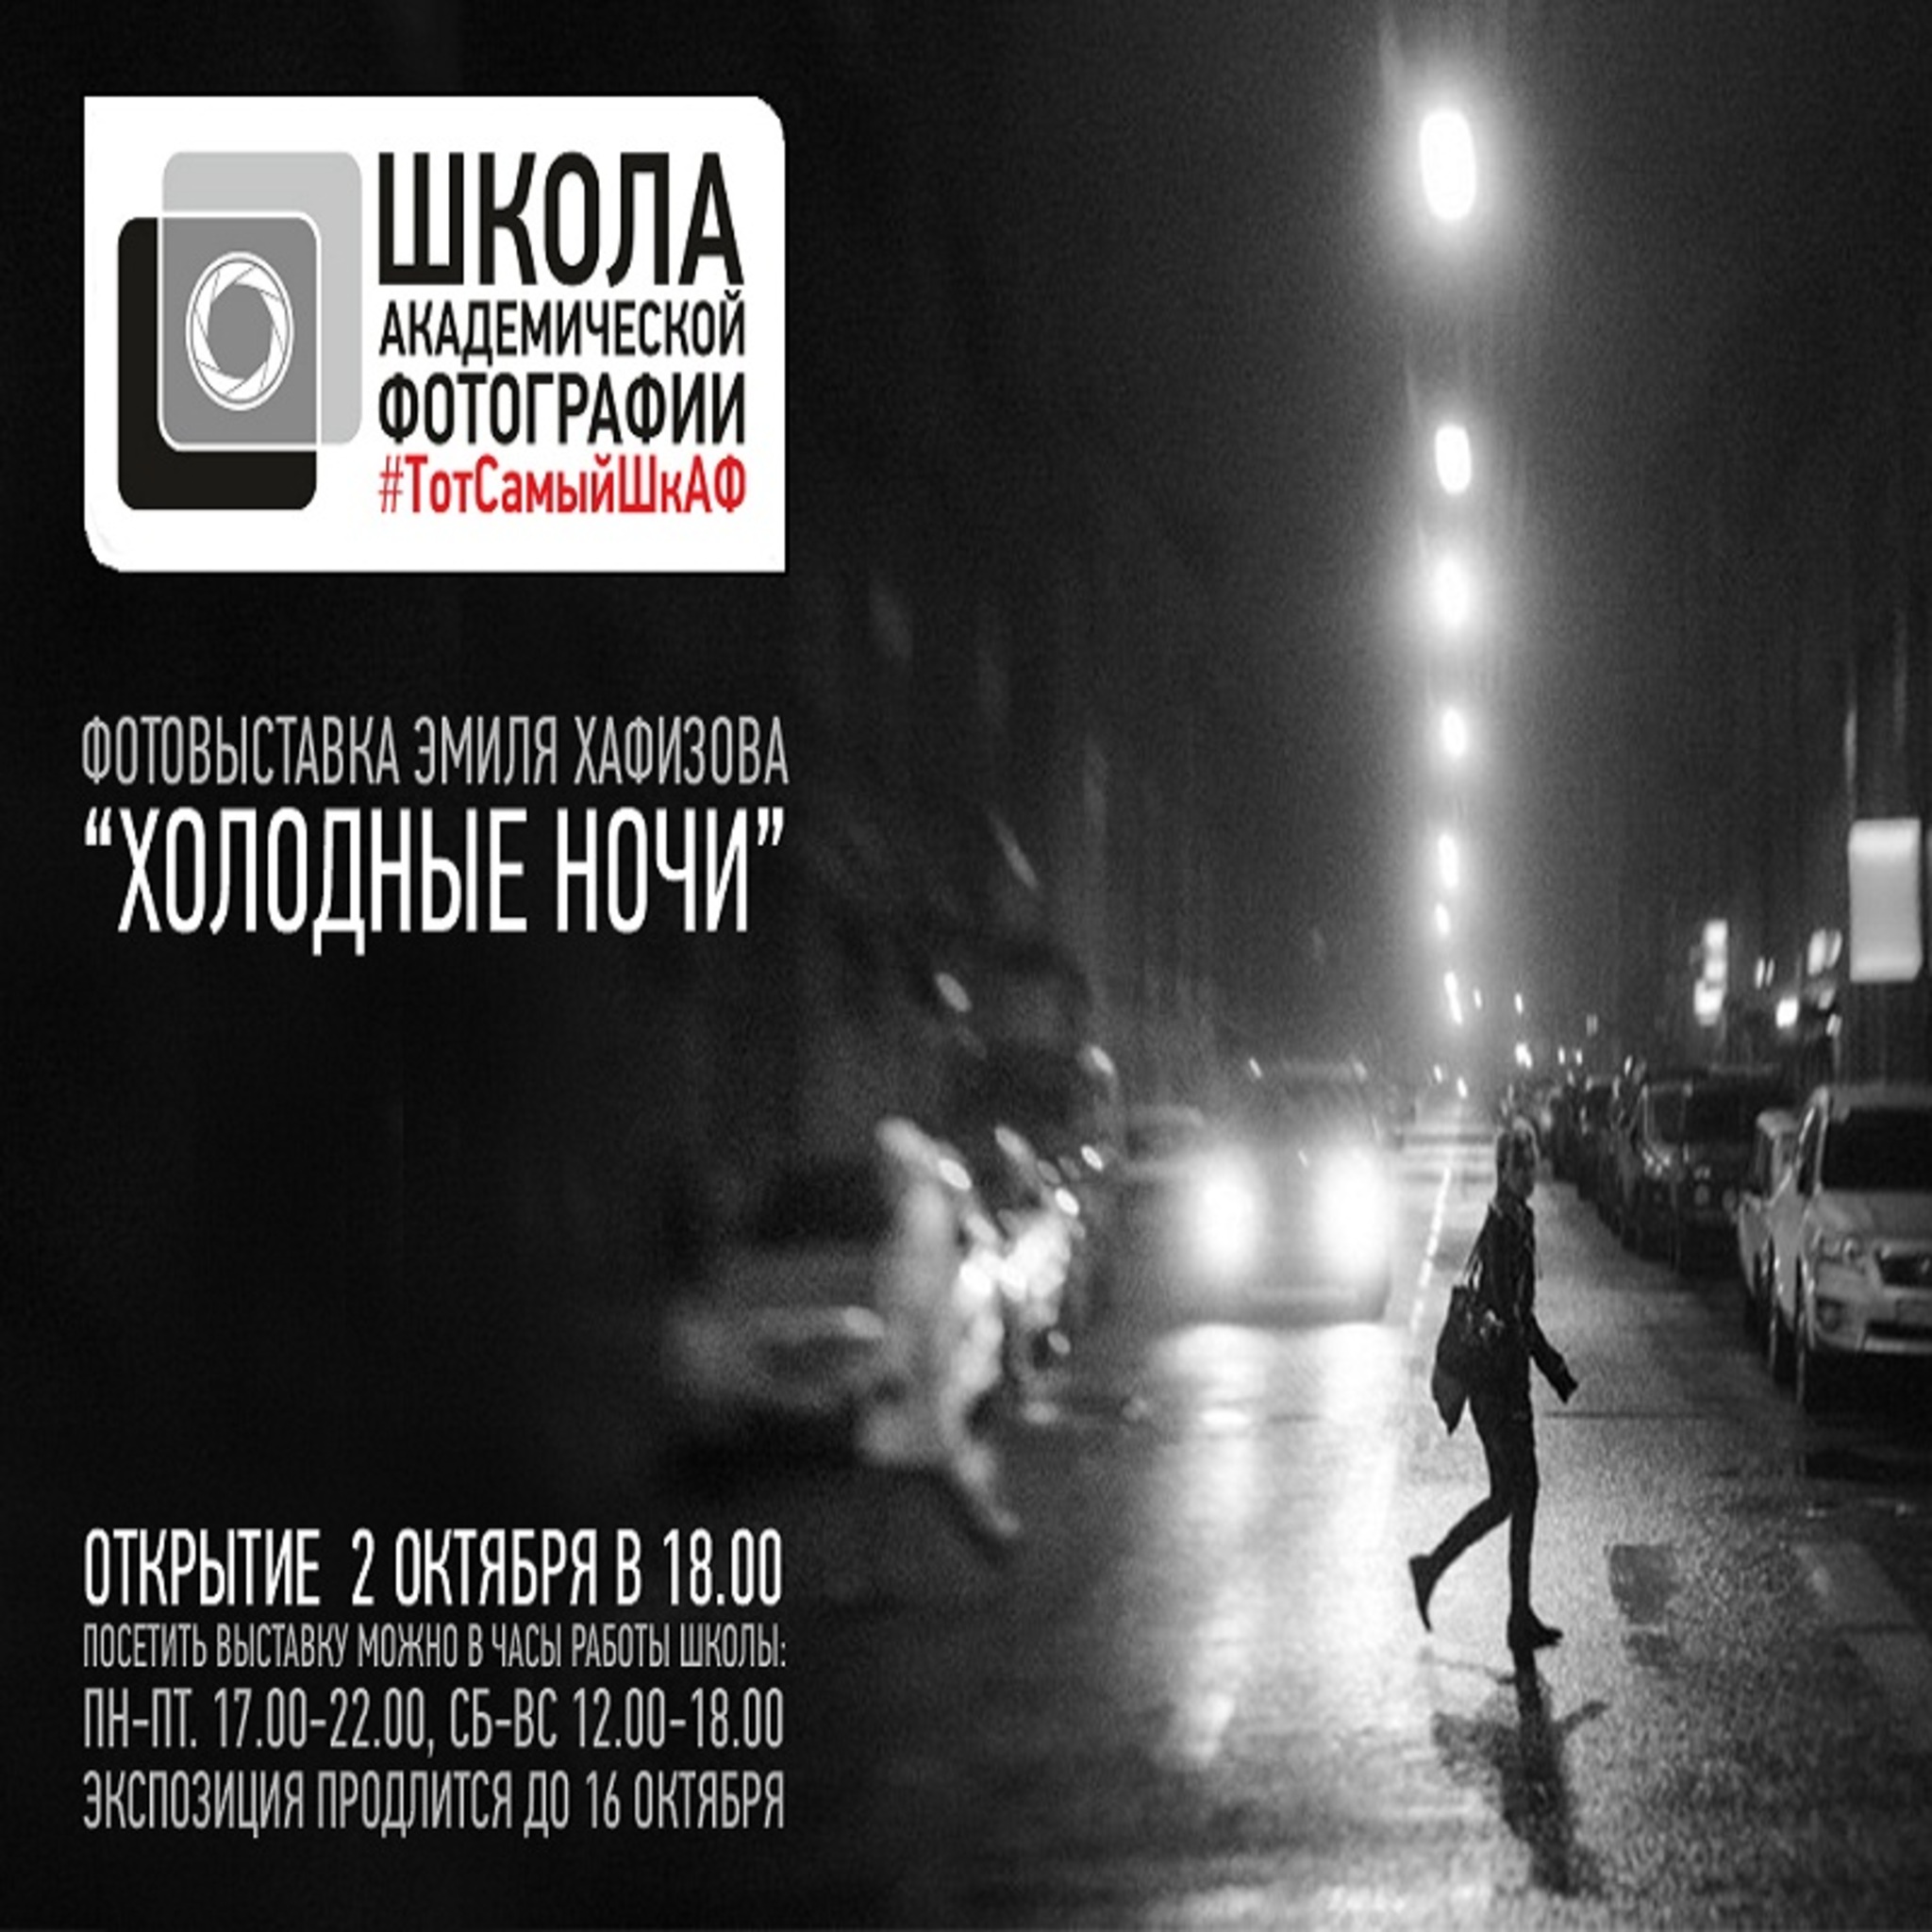 Photo exhibition Emile Khafizova Cold Night